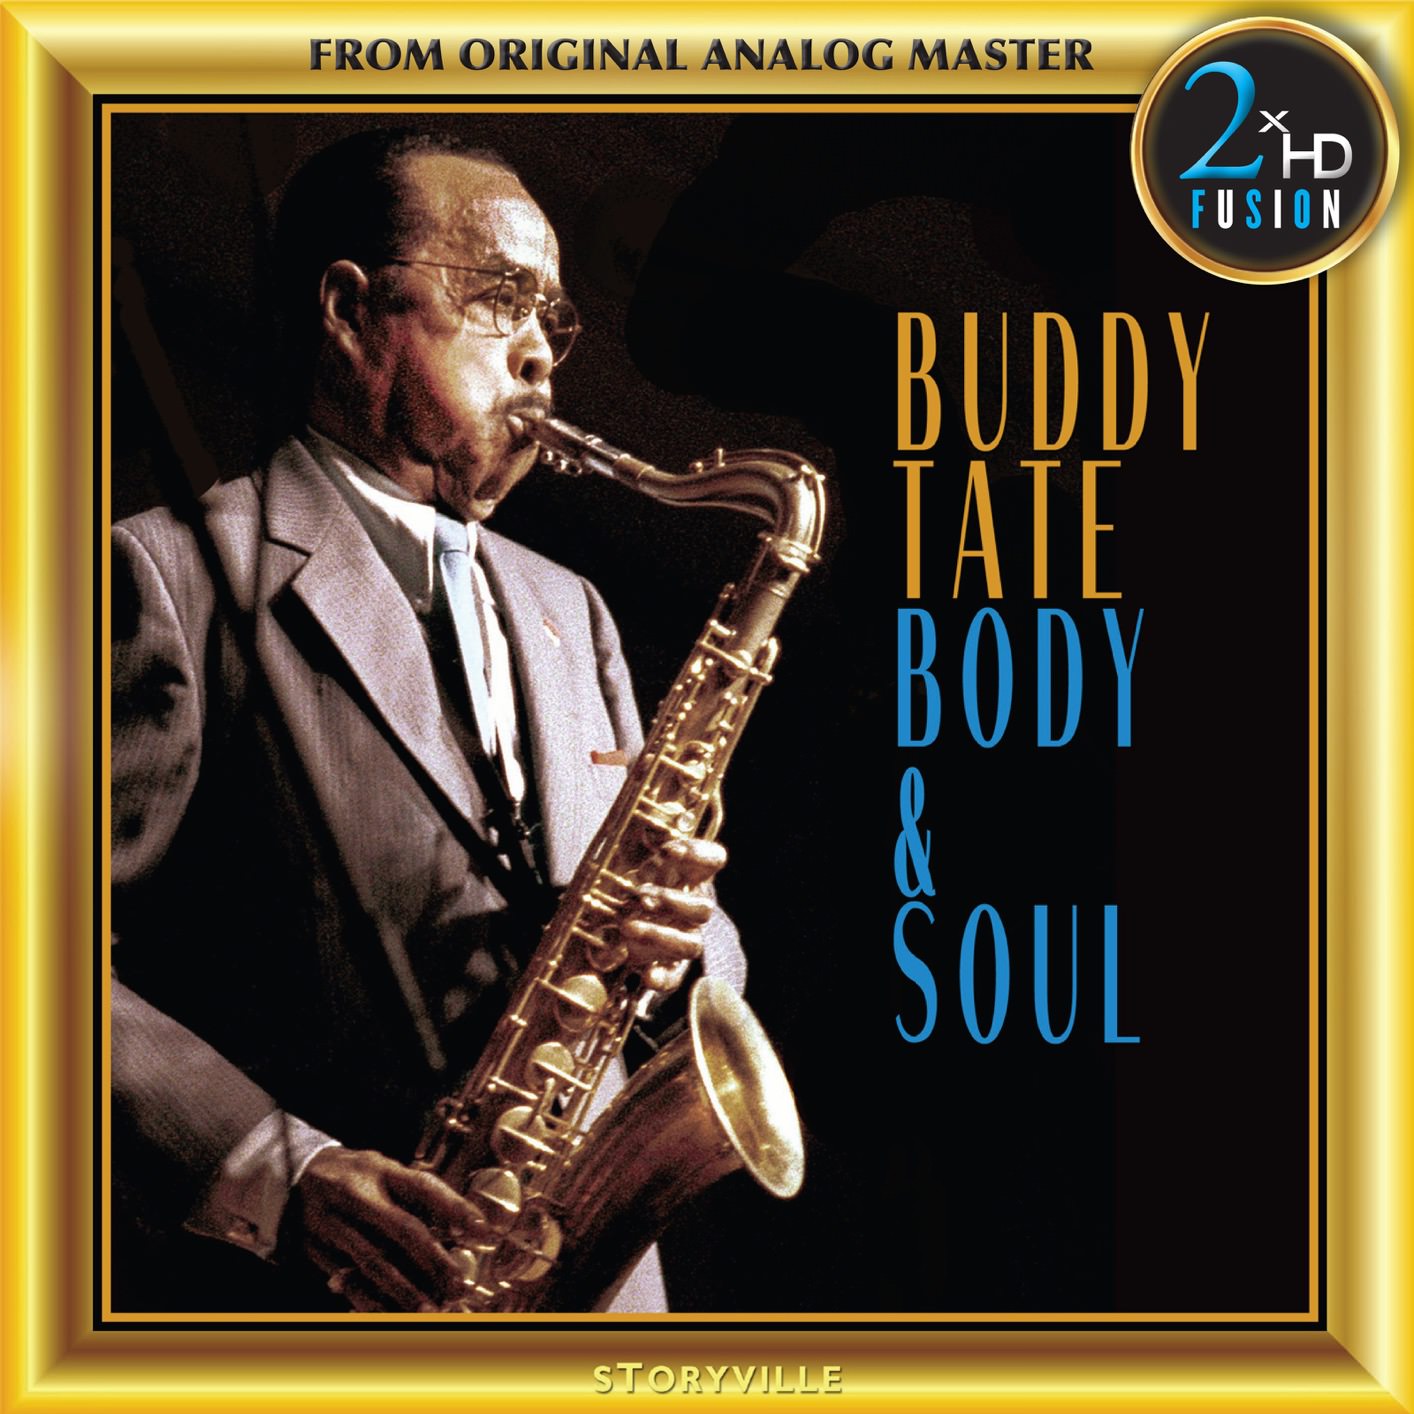 Buddy Tate – Buddy Tate Body and Soul (1975/2018) [FLAC 24bit/192kHz]